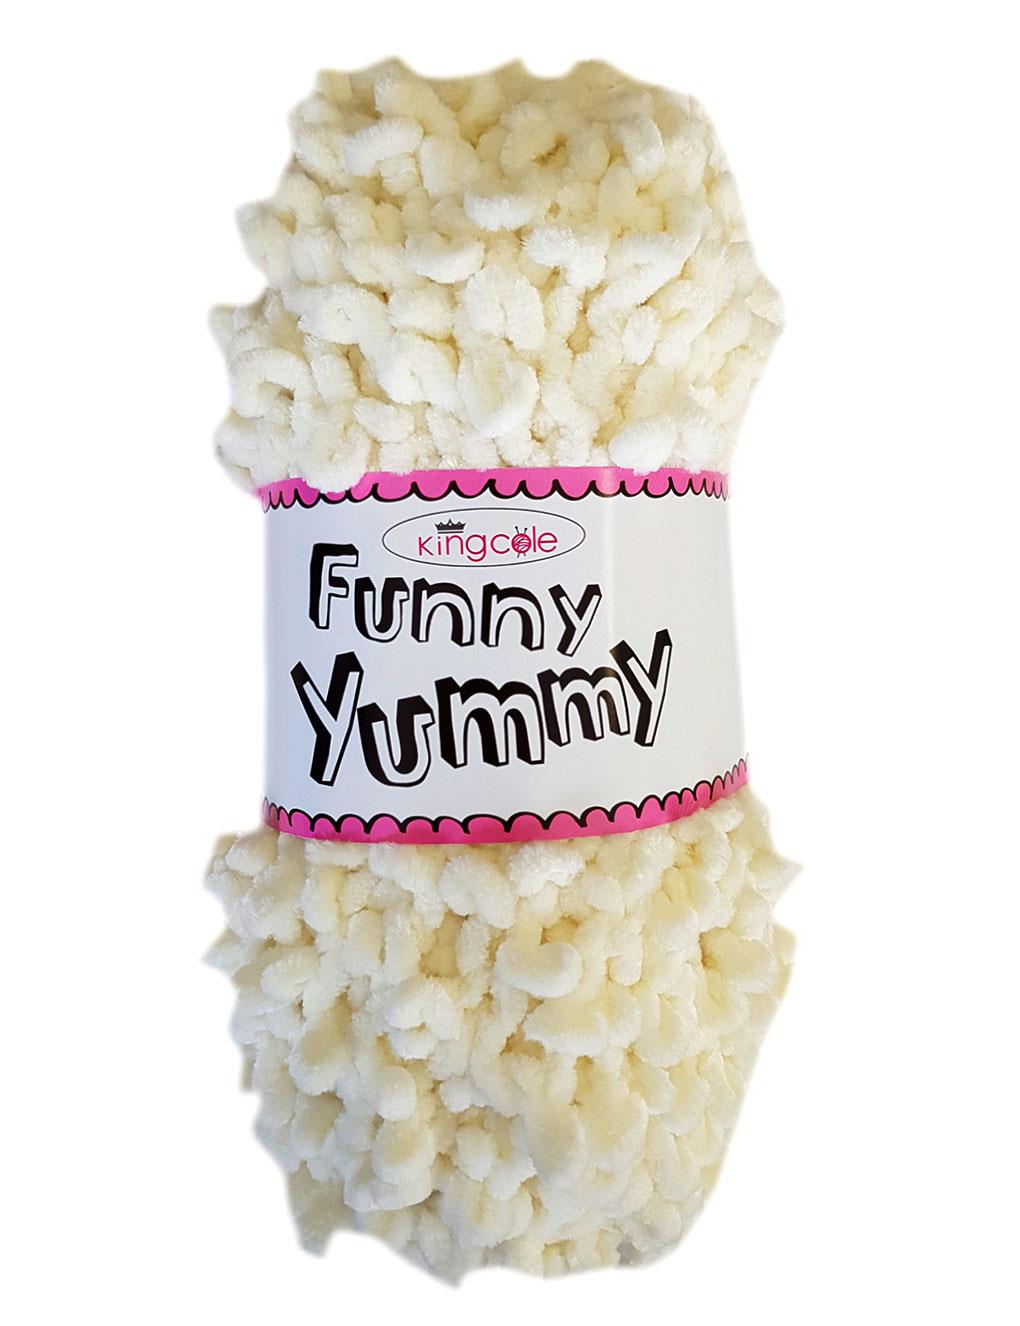 King Cole Funny Yummy Cream (4142) chenille yarn - 100g